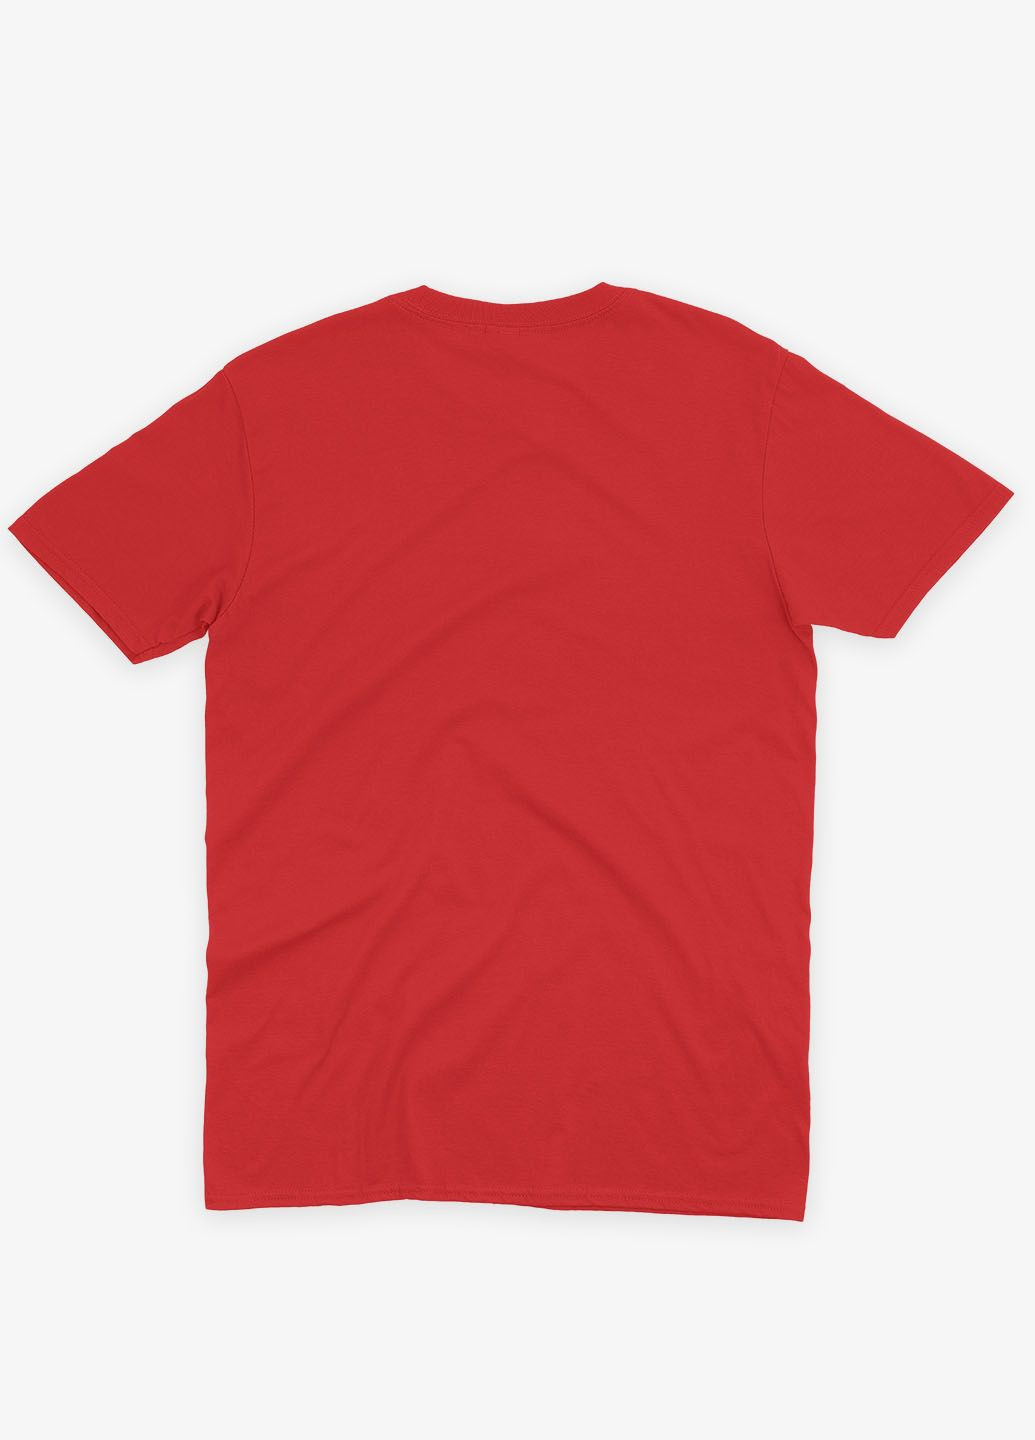 Красная демисезонная футболка для девочки с принтом супергероя - бэтмен (ts001-1-sre-006-003-022-g) Modno